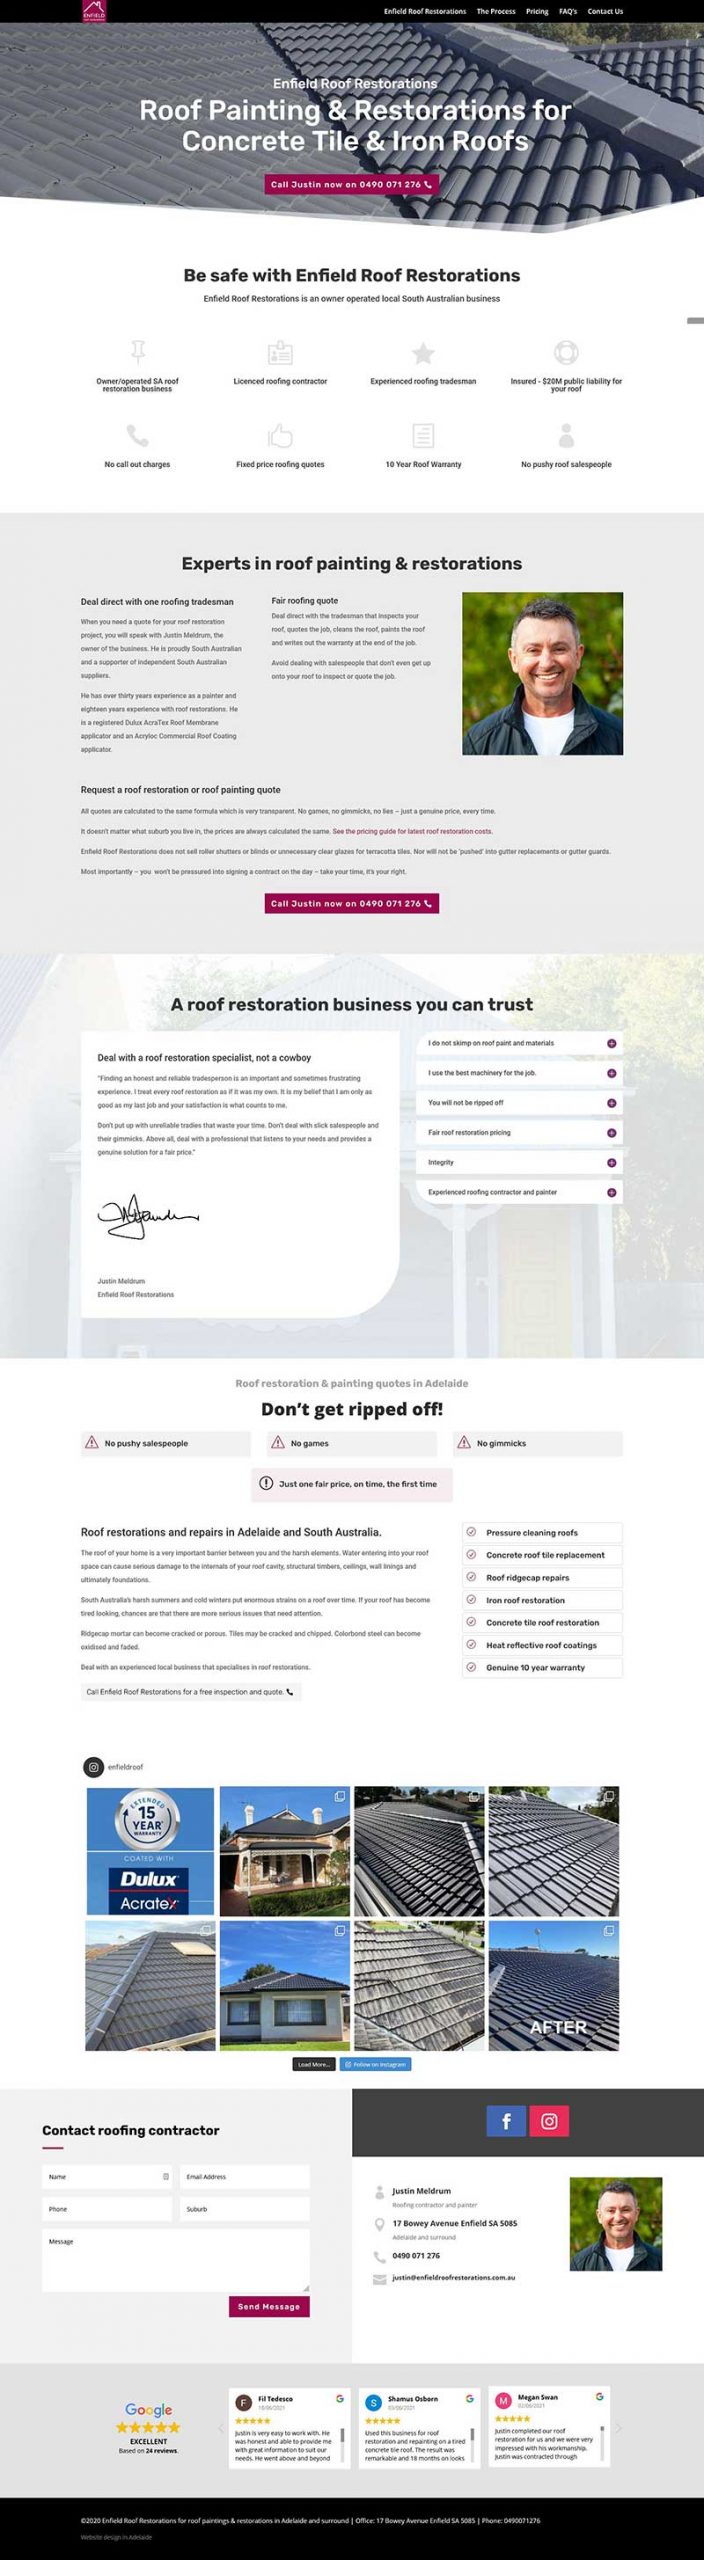 Website design for roof restoration business in Adelaide